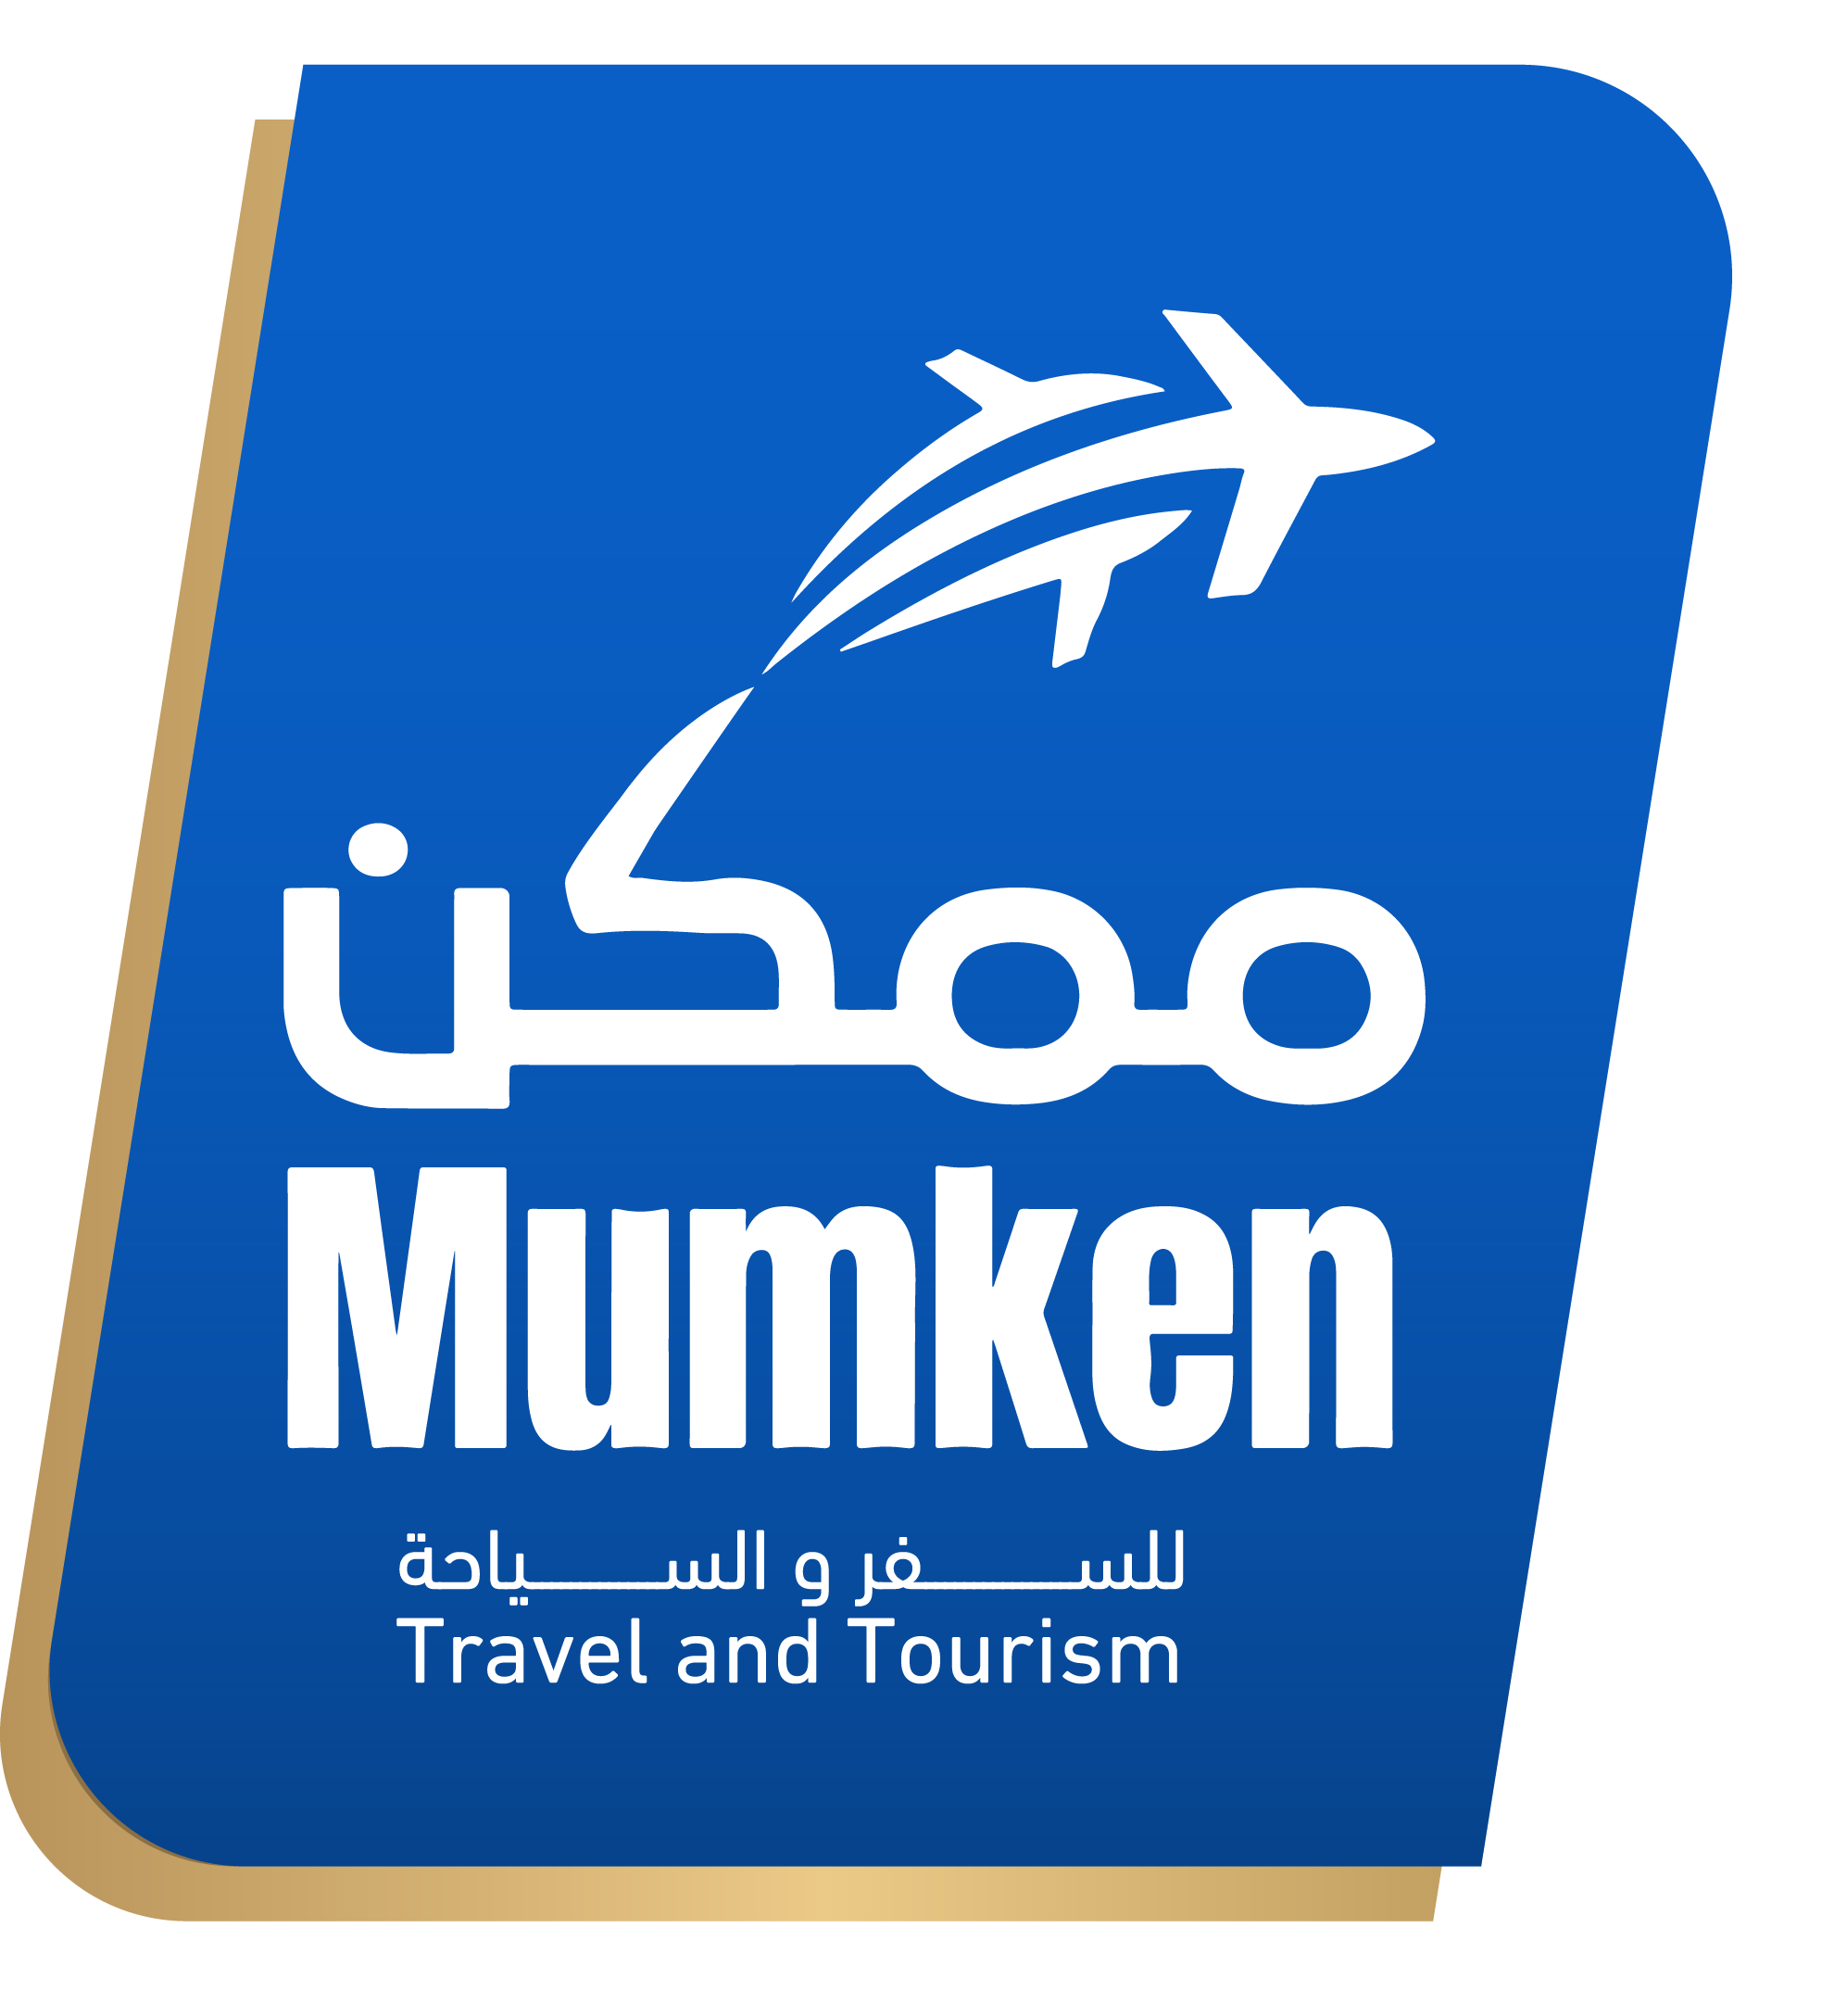 Mumken Travel & Tourism ( TUGATA No: 406 )